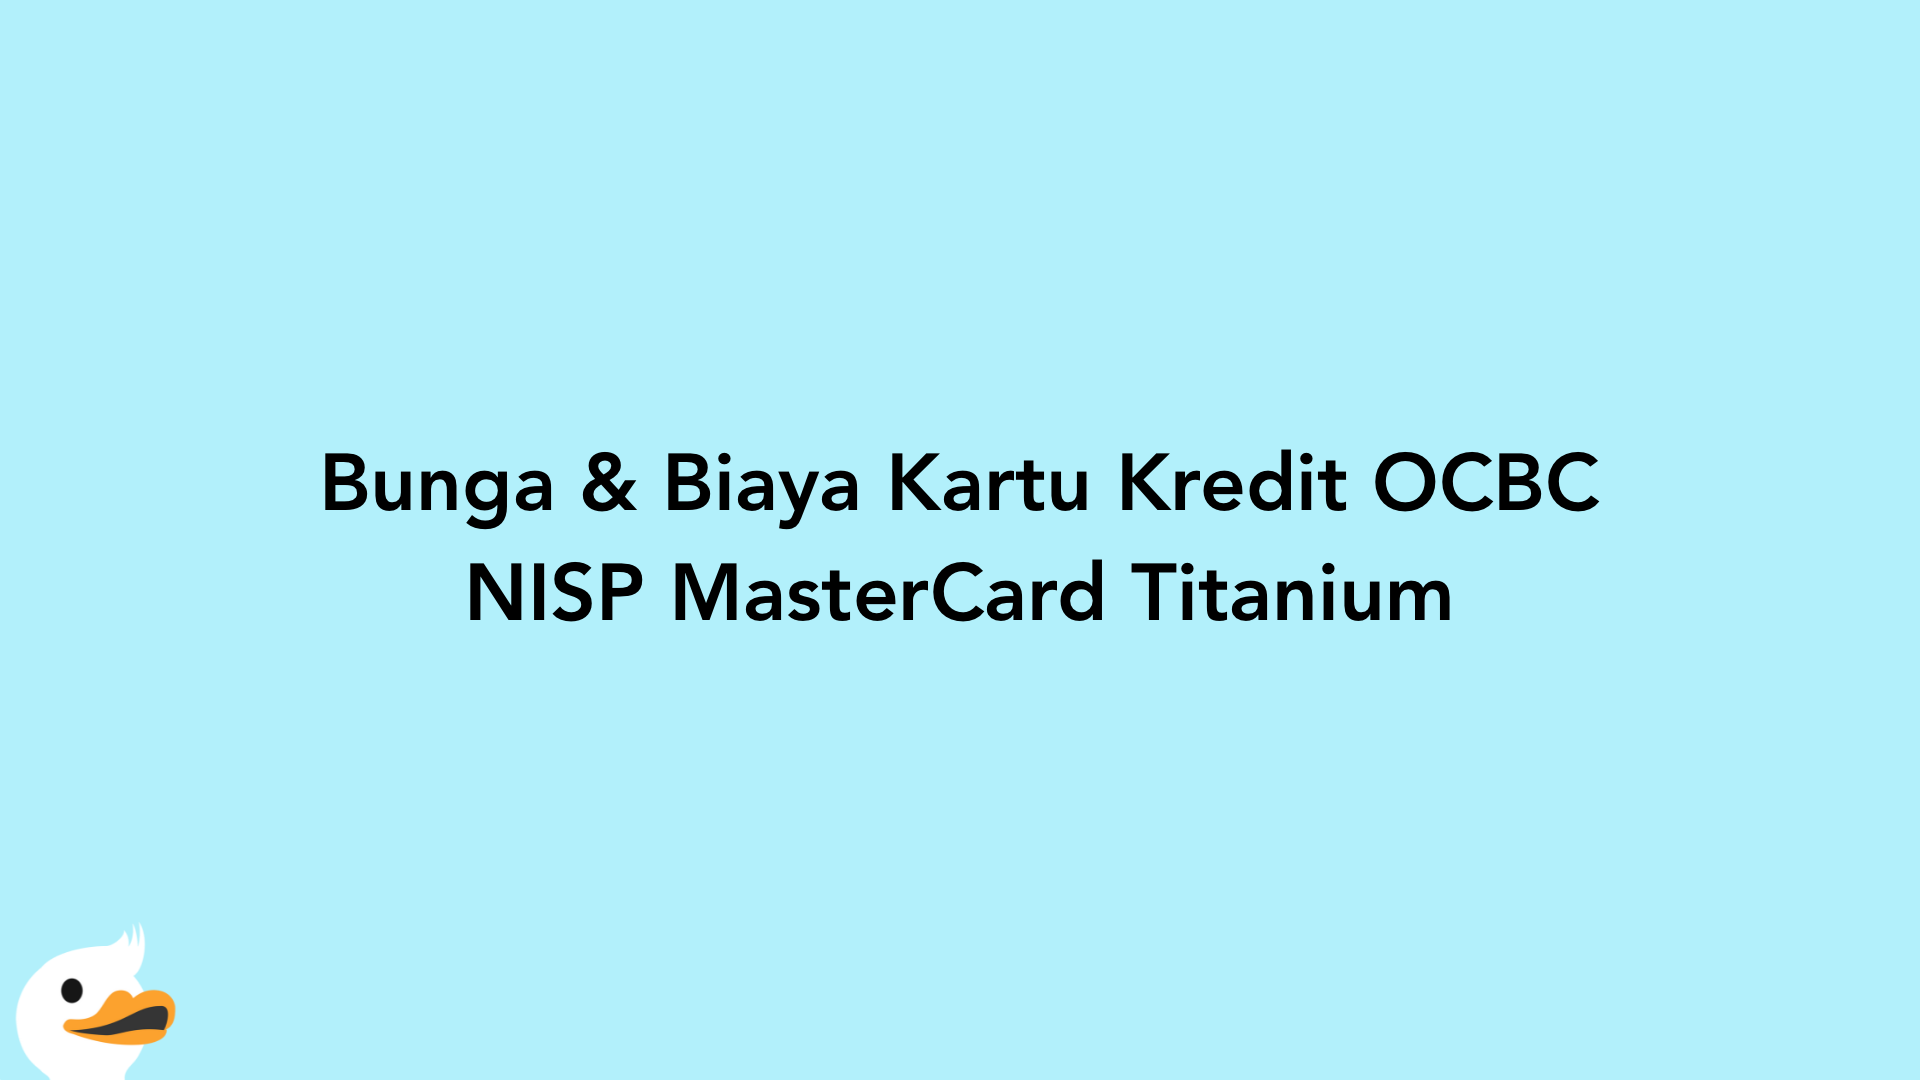 Bunga & Biaya Kartu Kredit OCBC NISP MasterCard Titanium